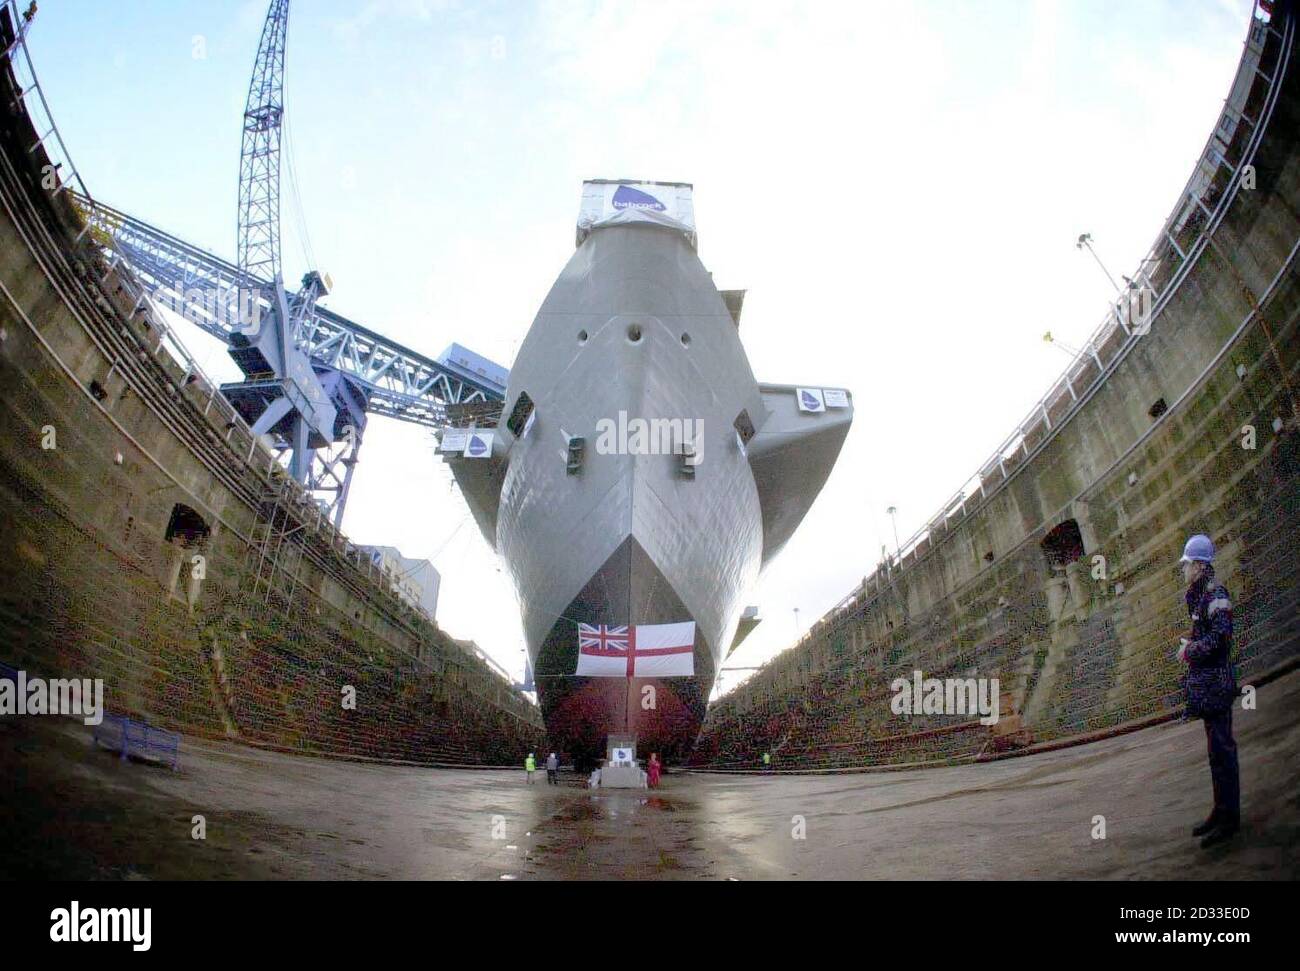 Royal Navy Aircraft Carrier HMS Illustrious beendet seine Refit in Rosyth Dockyard. Ihr Andocken markiert die halbe Etappe in den Schiffen Multi-Millionen Pfund-Refit, ihre erste seit 1994. Sie soll am Freitag ausgedockt werden, ein großer Schritt in Richtung ihrer Rückkehr zur vollen Eignung für den Dienst auf See. Stockfoto